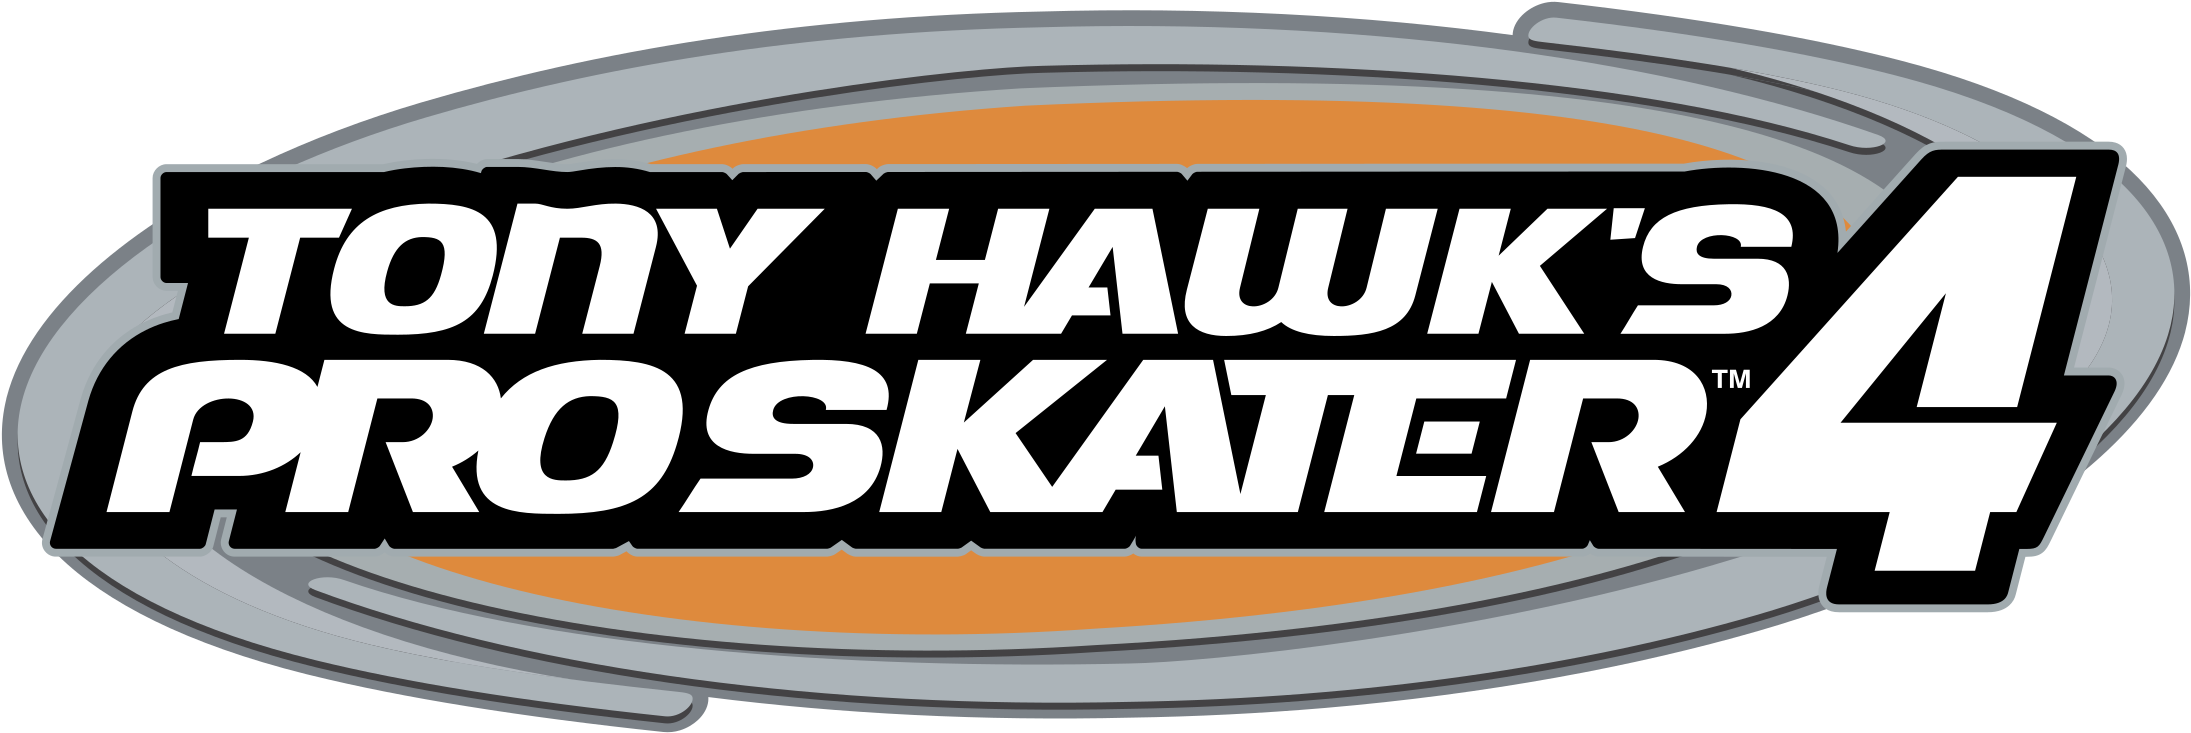 Tony Hawk Pro Skater 4 Logo Png Transparent - Tony Hawk Pro Skater 4 Clipart (2400x2400), Png Download